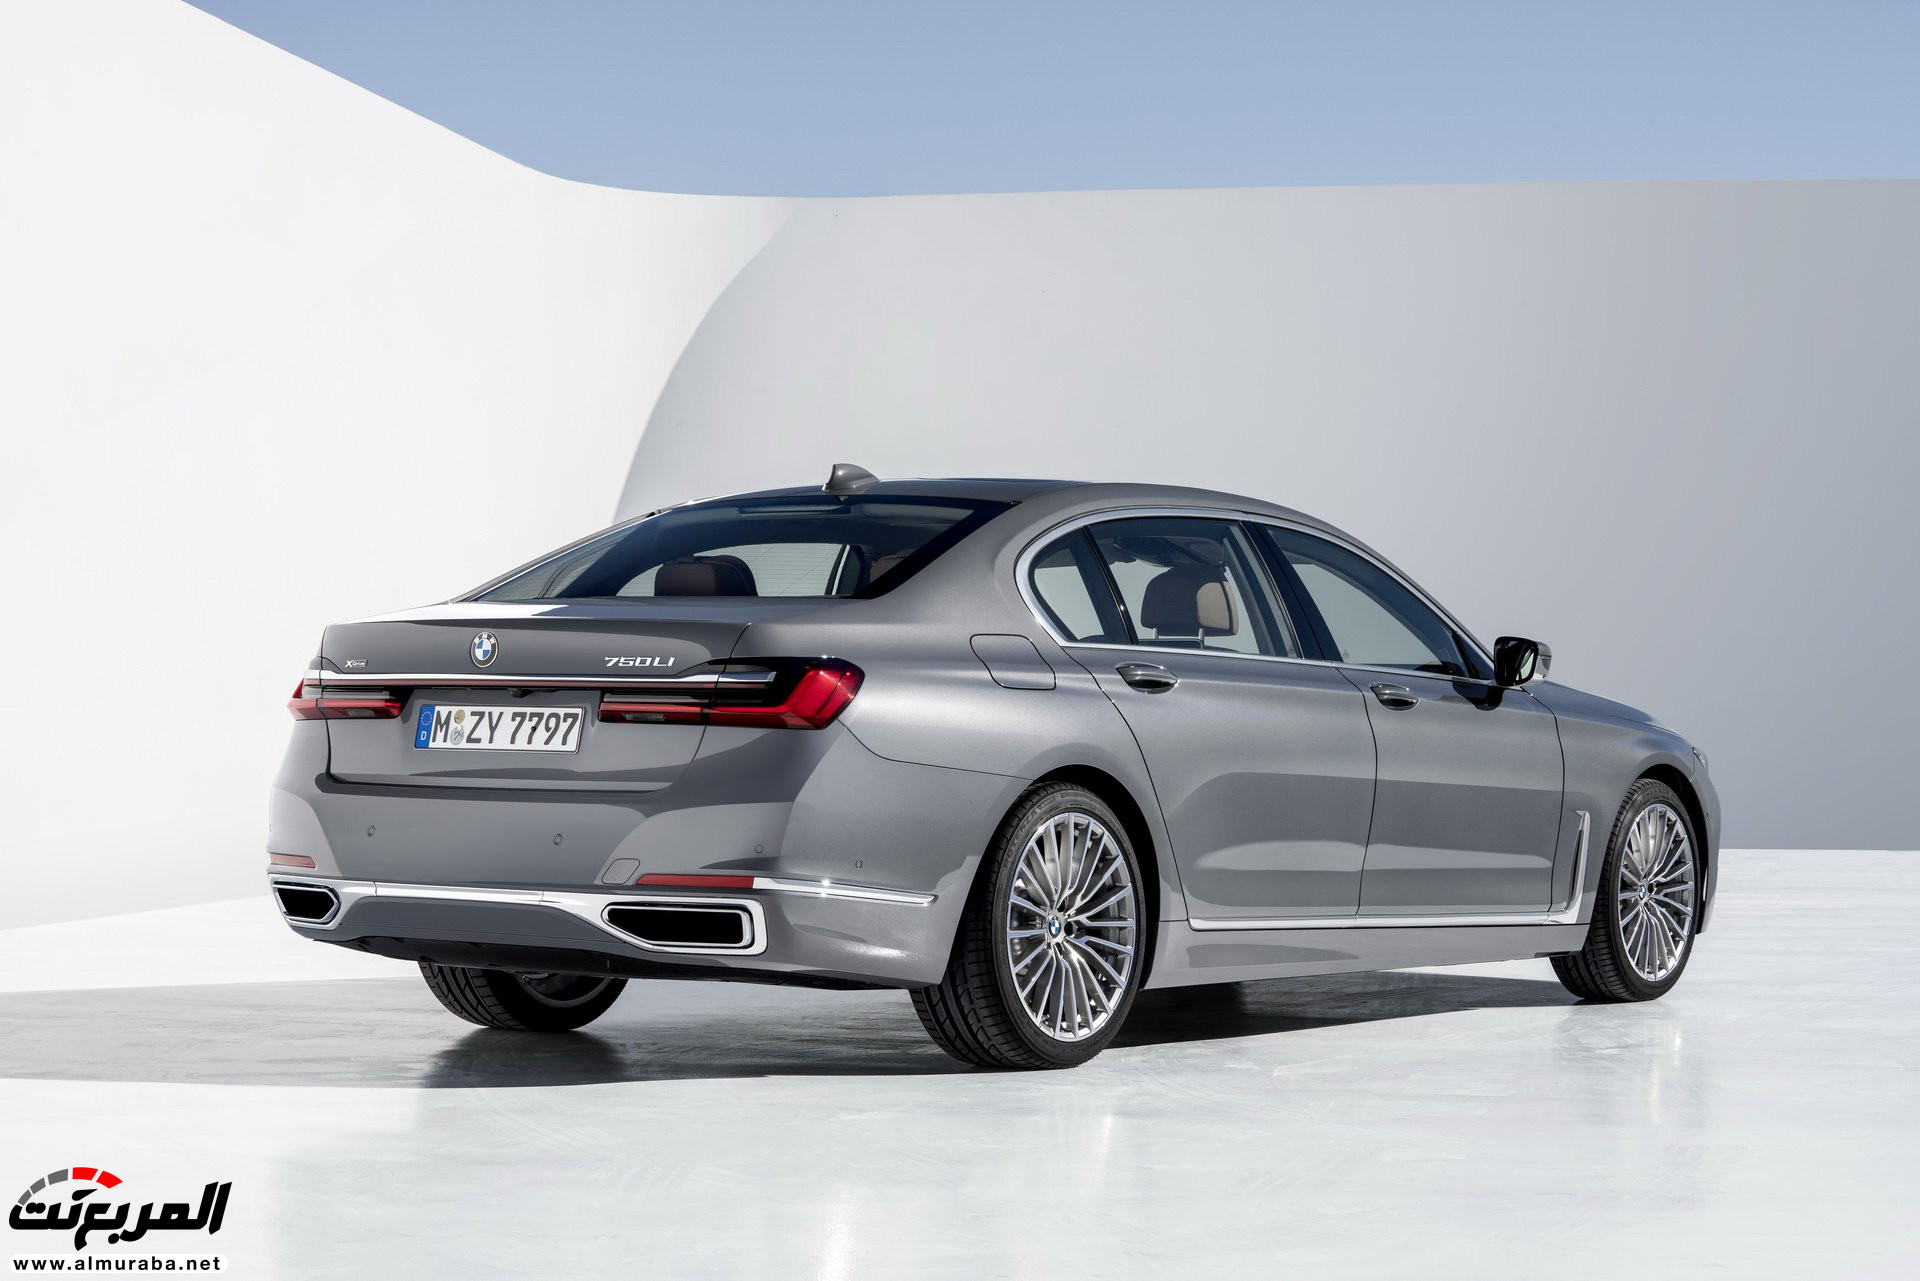 بي ام دبليو الفئة السابعة 2020 المحدثة تكشف نفسها رسمياً "صور ومواصفات" BMW 7 Series 300